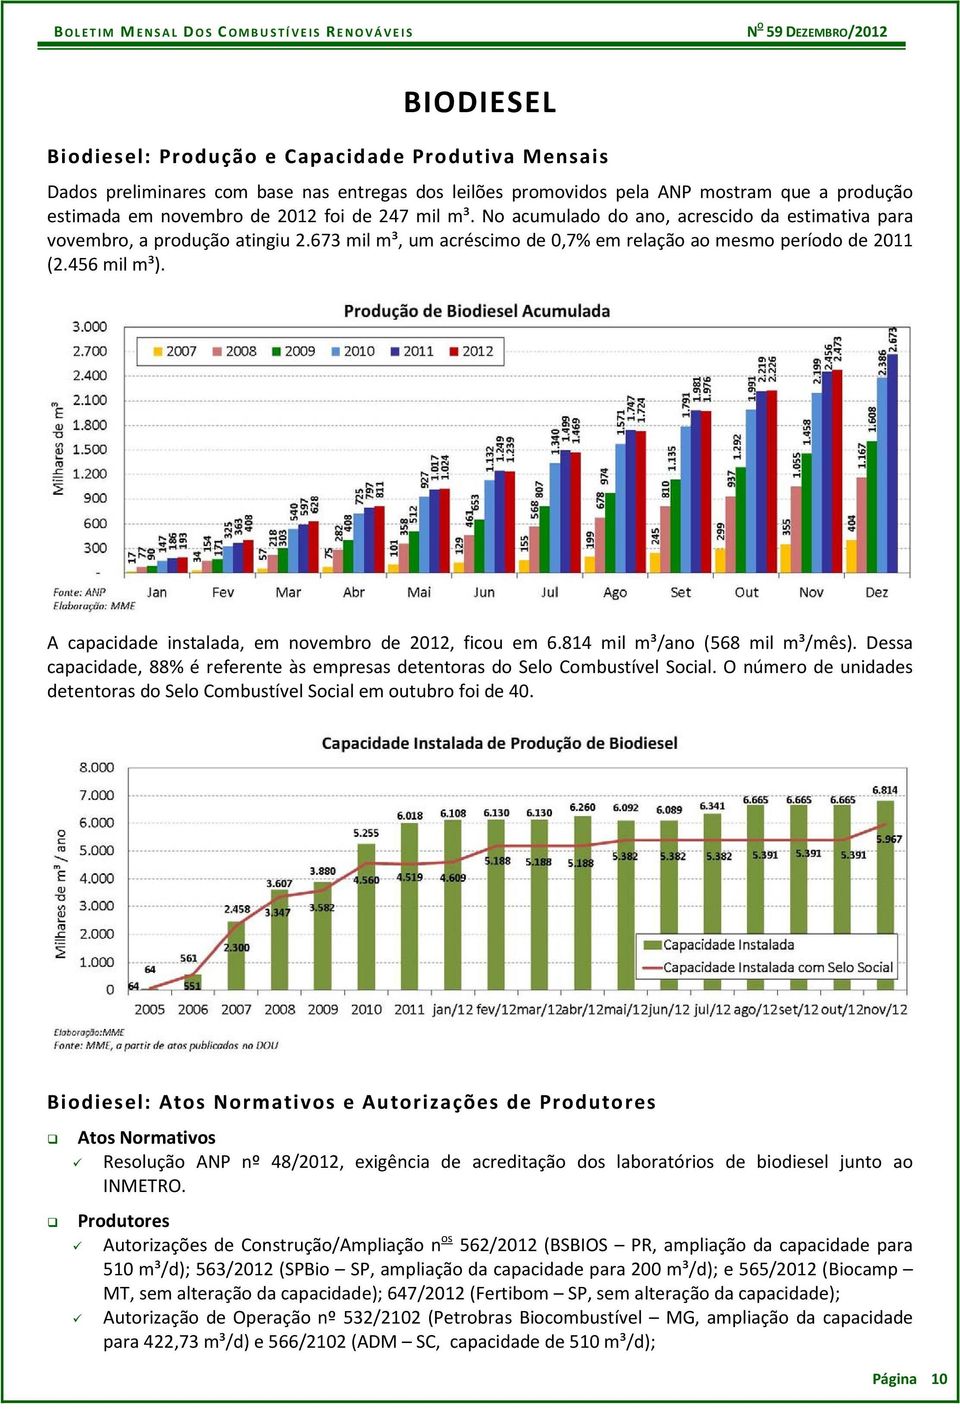 A capacidade instalada, em novembro de 2012, ficou em 6.814 mil m³/ano (568 mil m³/mês). Dessa capacidade, 88% é referente às empresas detentoras do Selo Combustível Social.